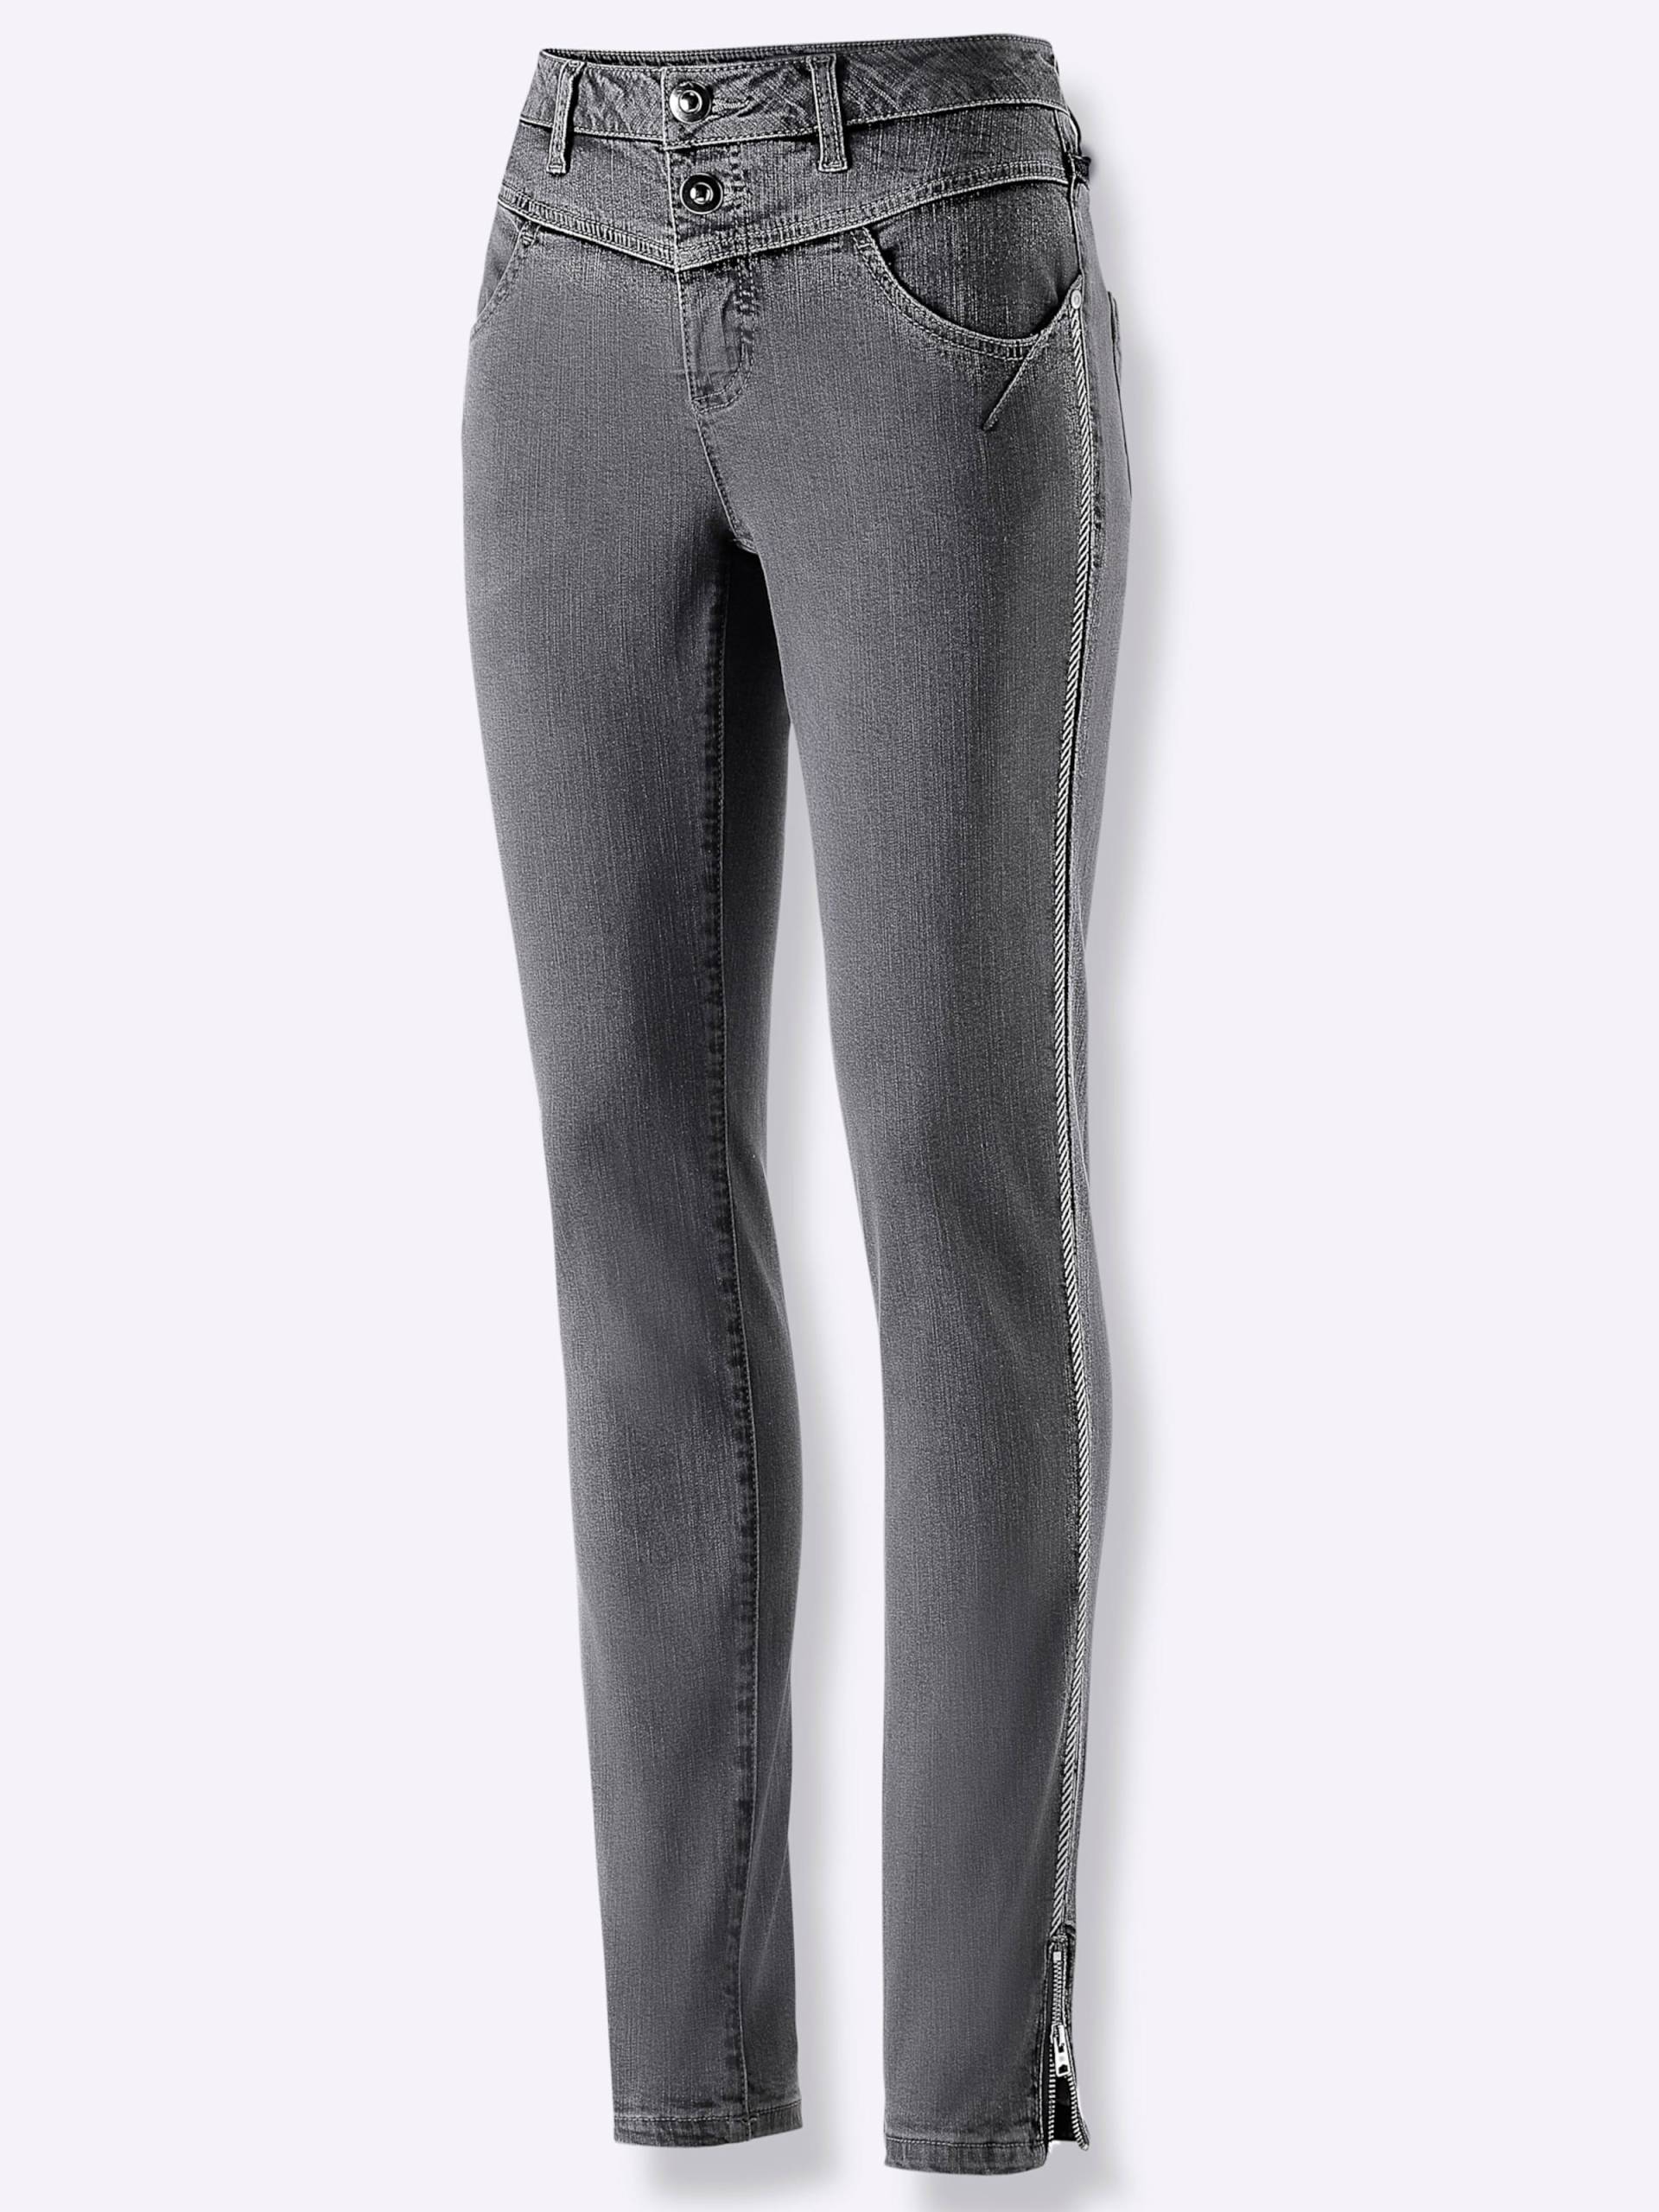 Modal-Baumwoll-Jeans in anthrazit-grey-denim von heine